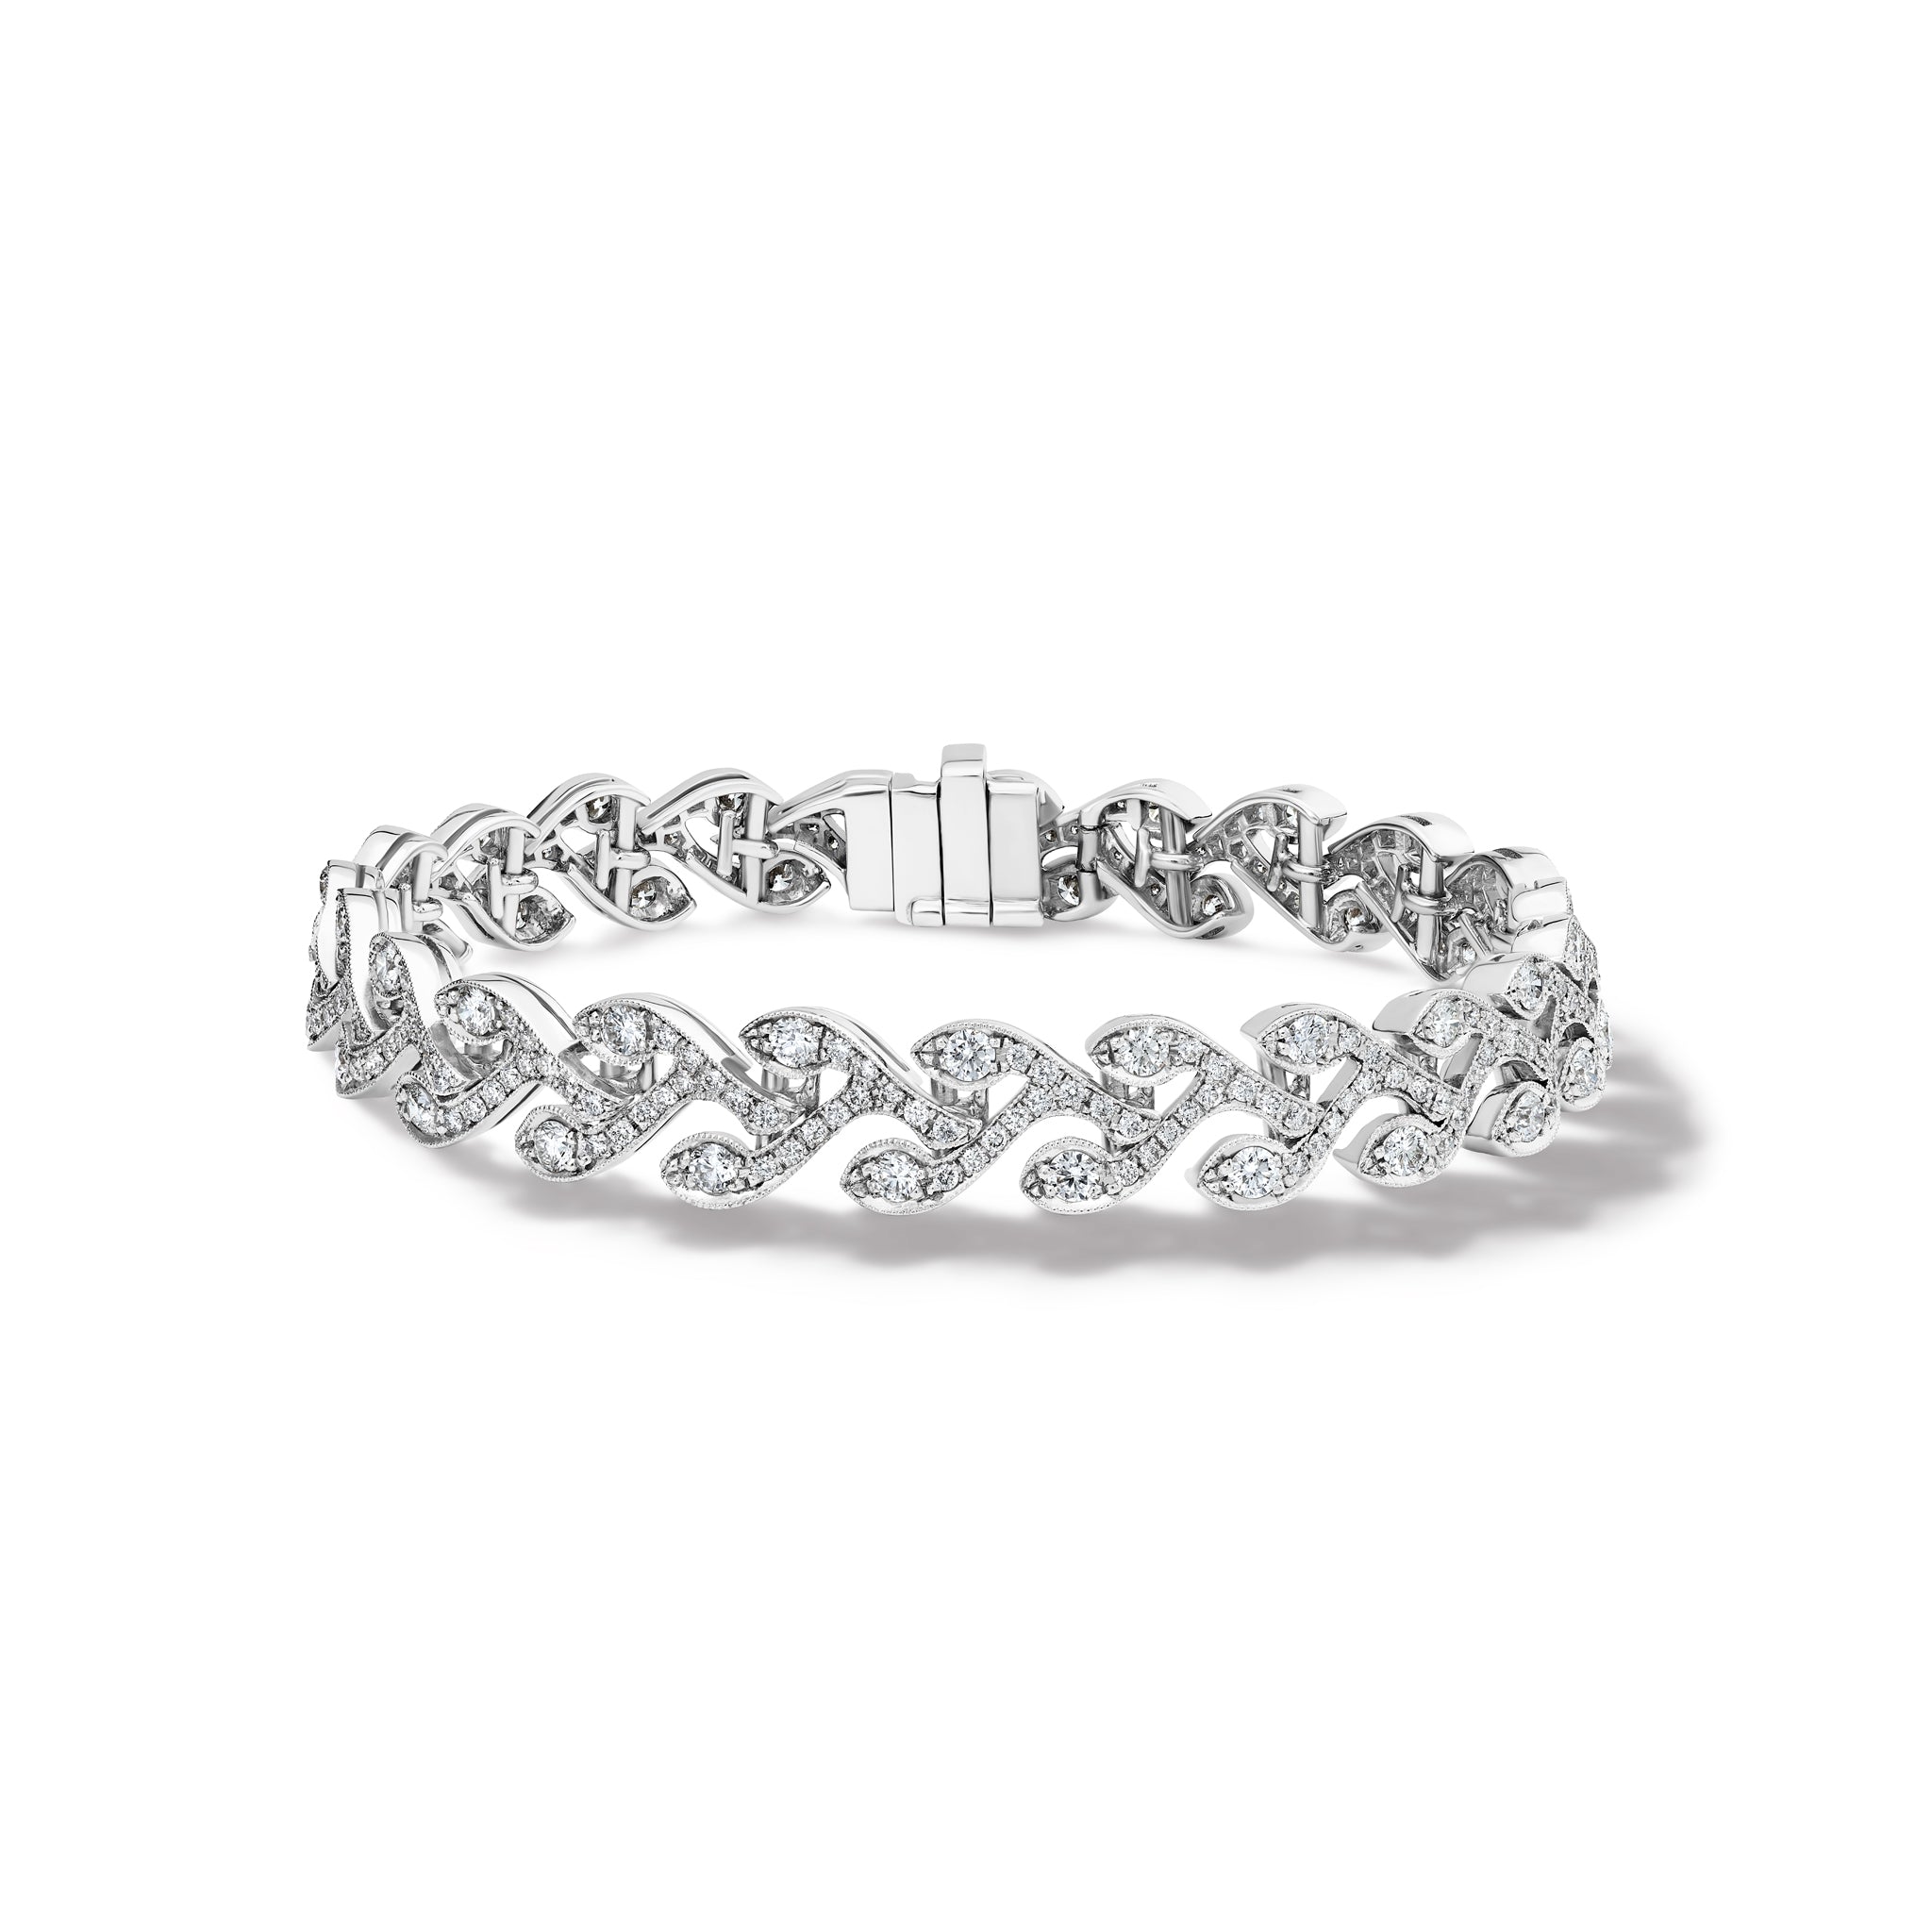 Rosemary Bracelet 18ct White Gold - Diamond